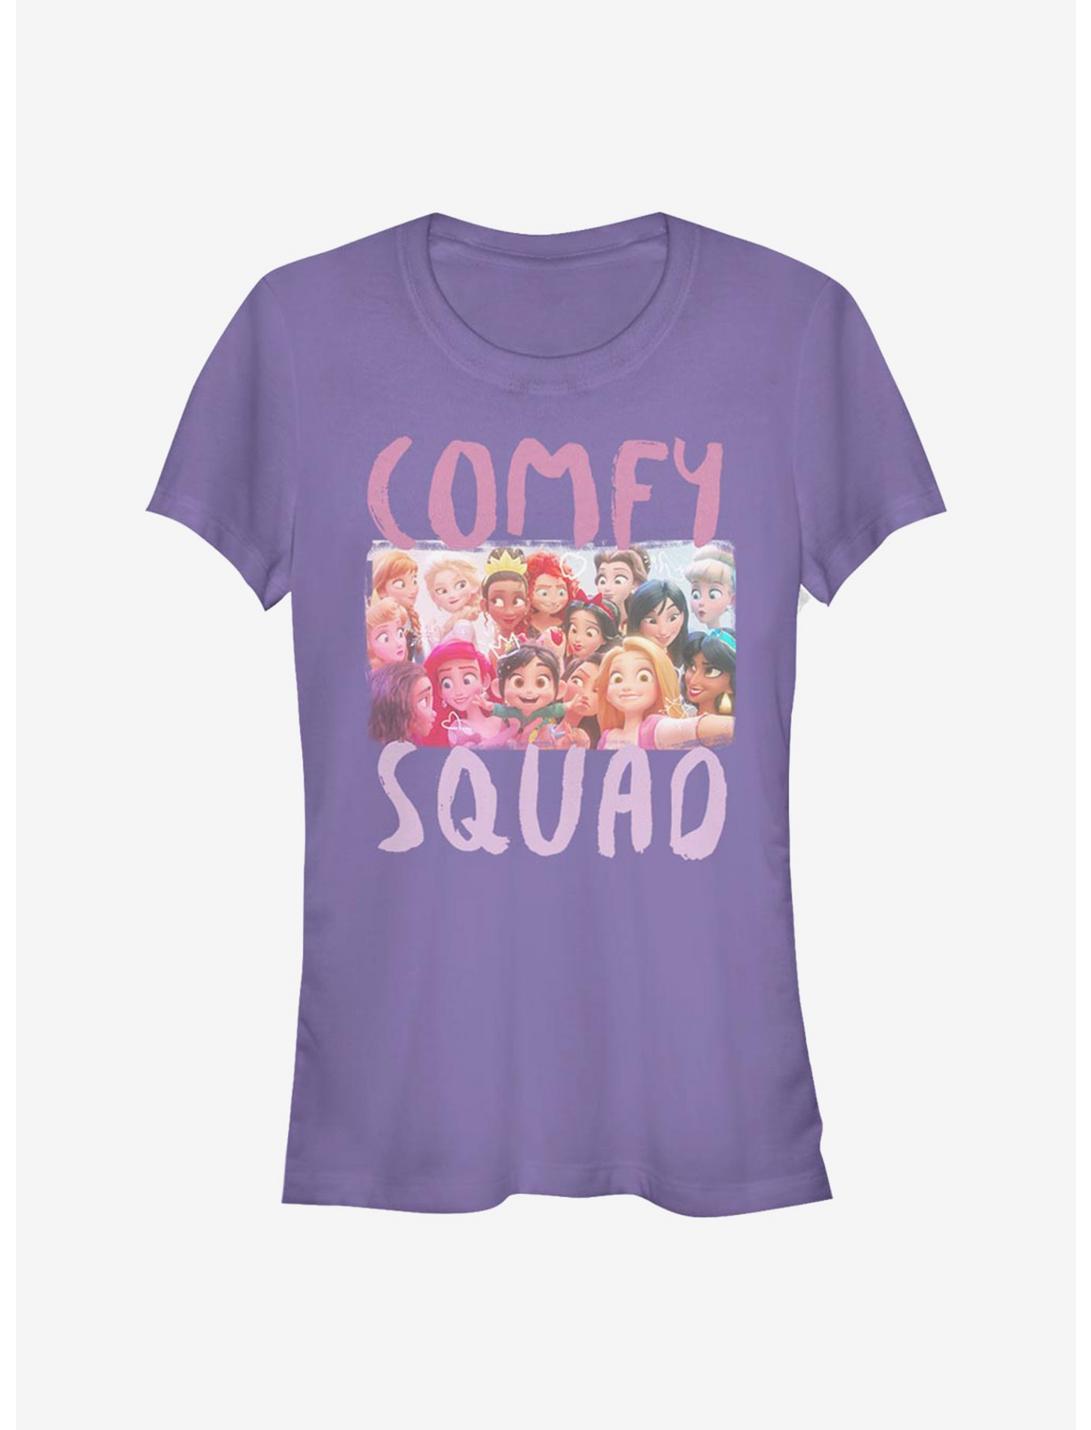 Disney Pixar Wreck-It Ralph Comfy Squad Selfie Girls T-Shirt, PURPLE, hi-res